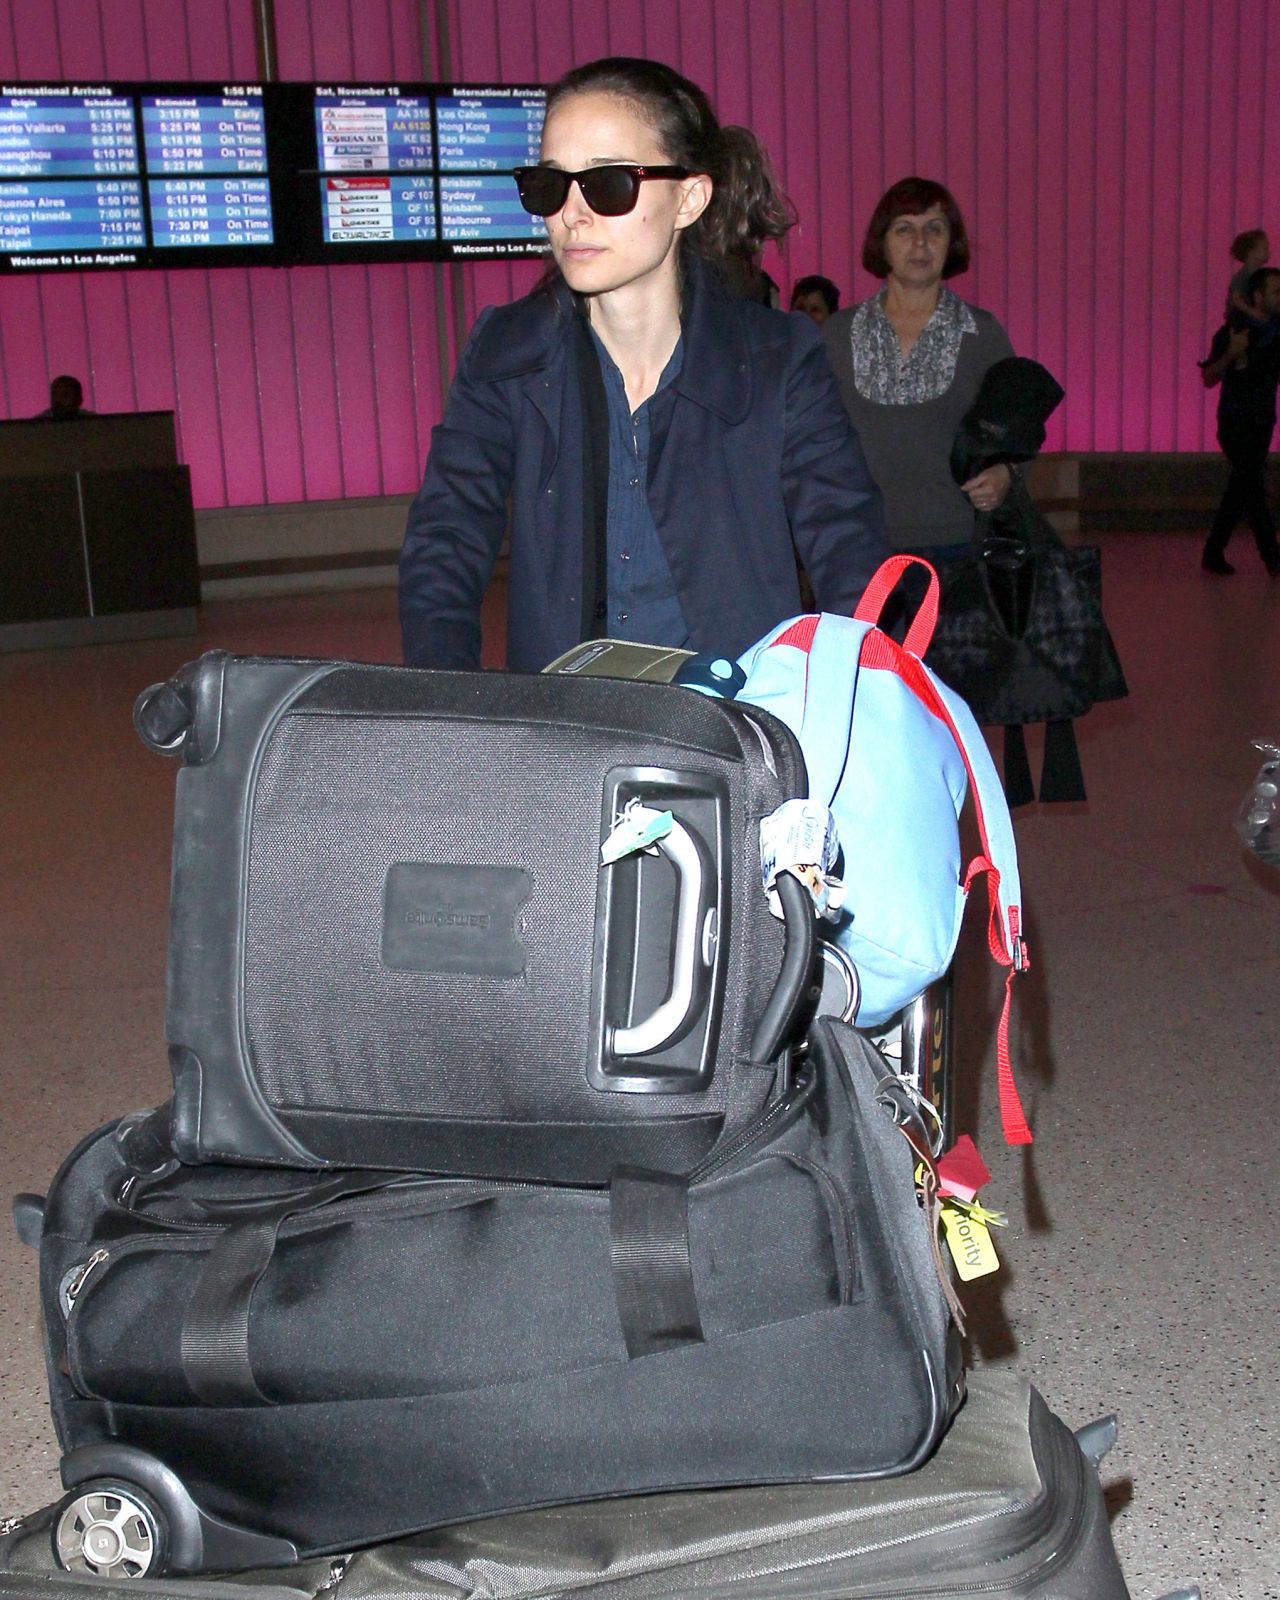 Natalie Portman at LAX Airport - November 2013